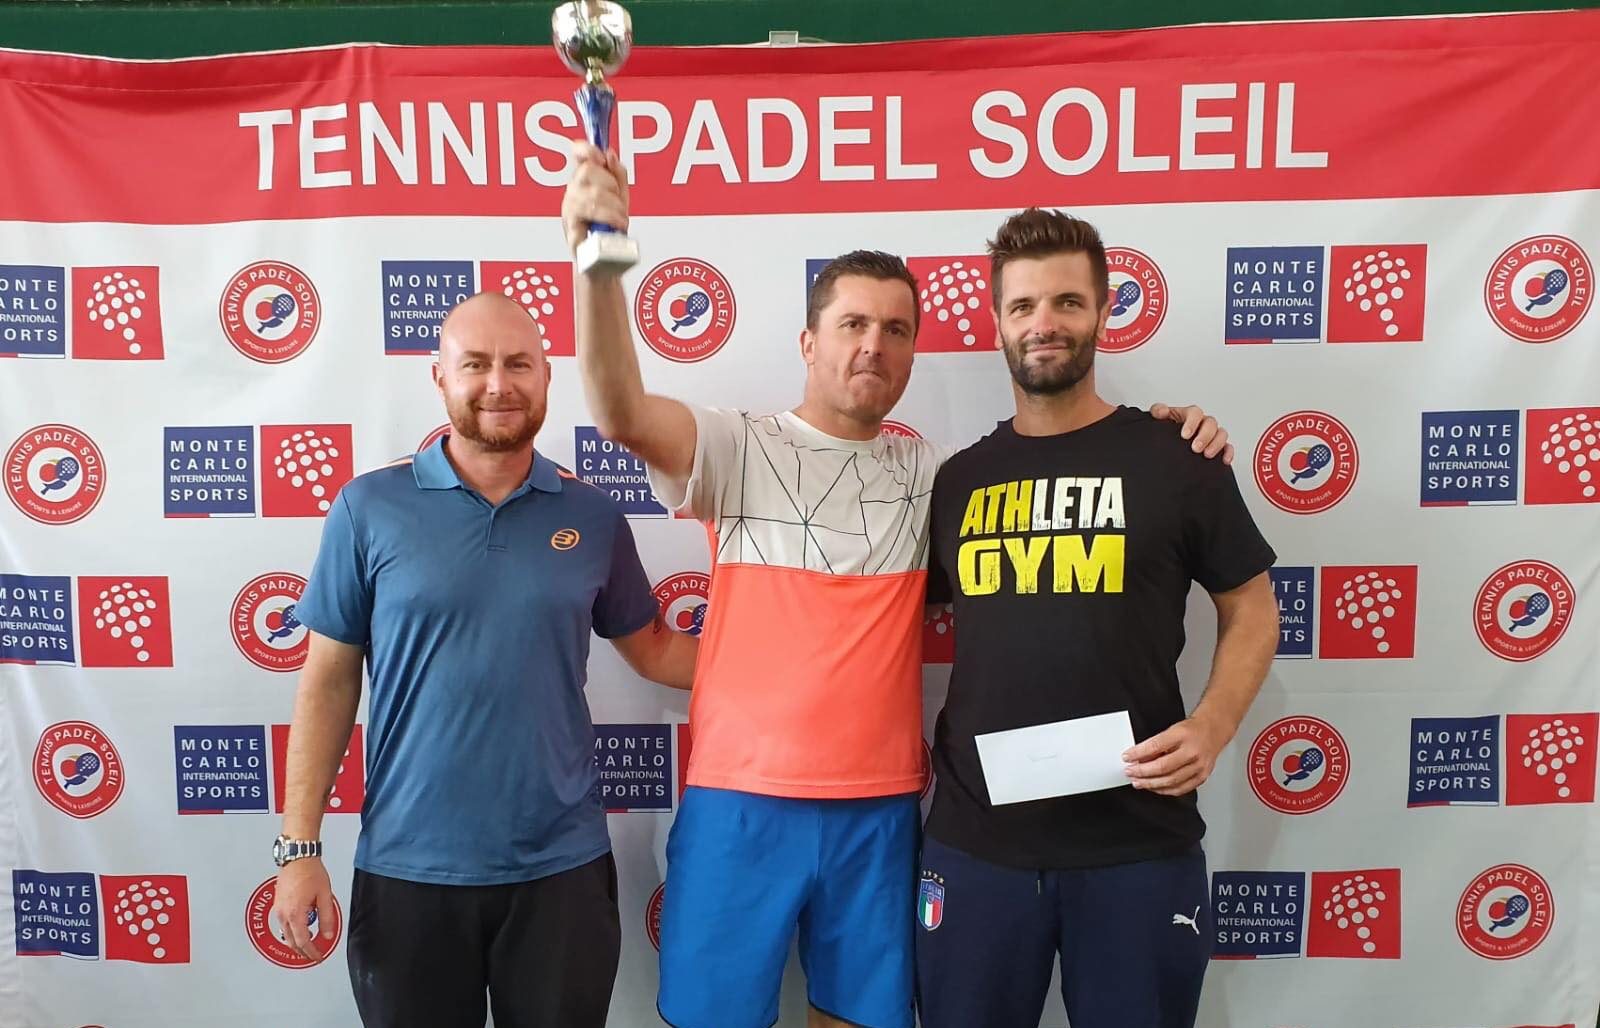 Valsot / Voulfor : Vainqueur de l’Open Tennis Padel Soleil